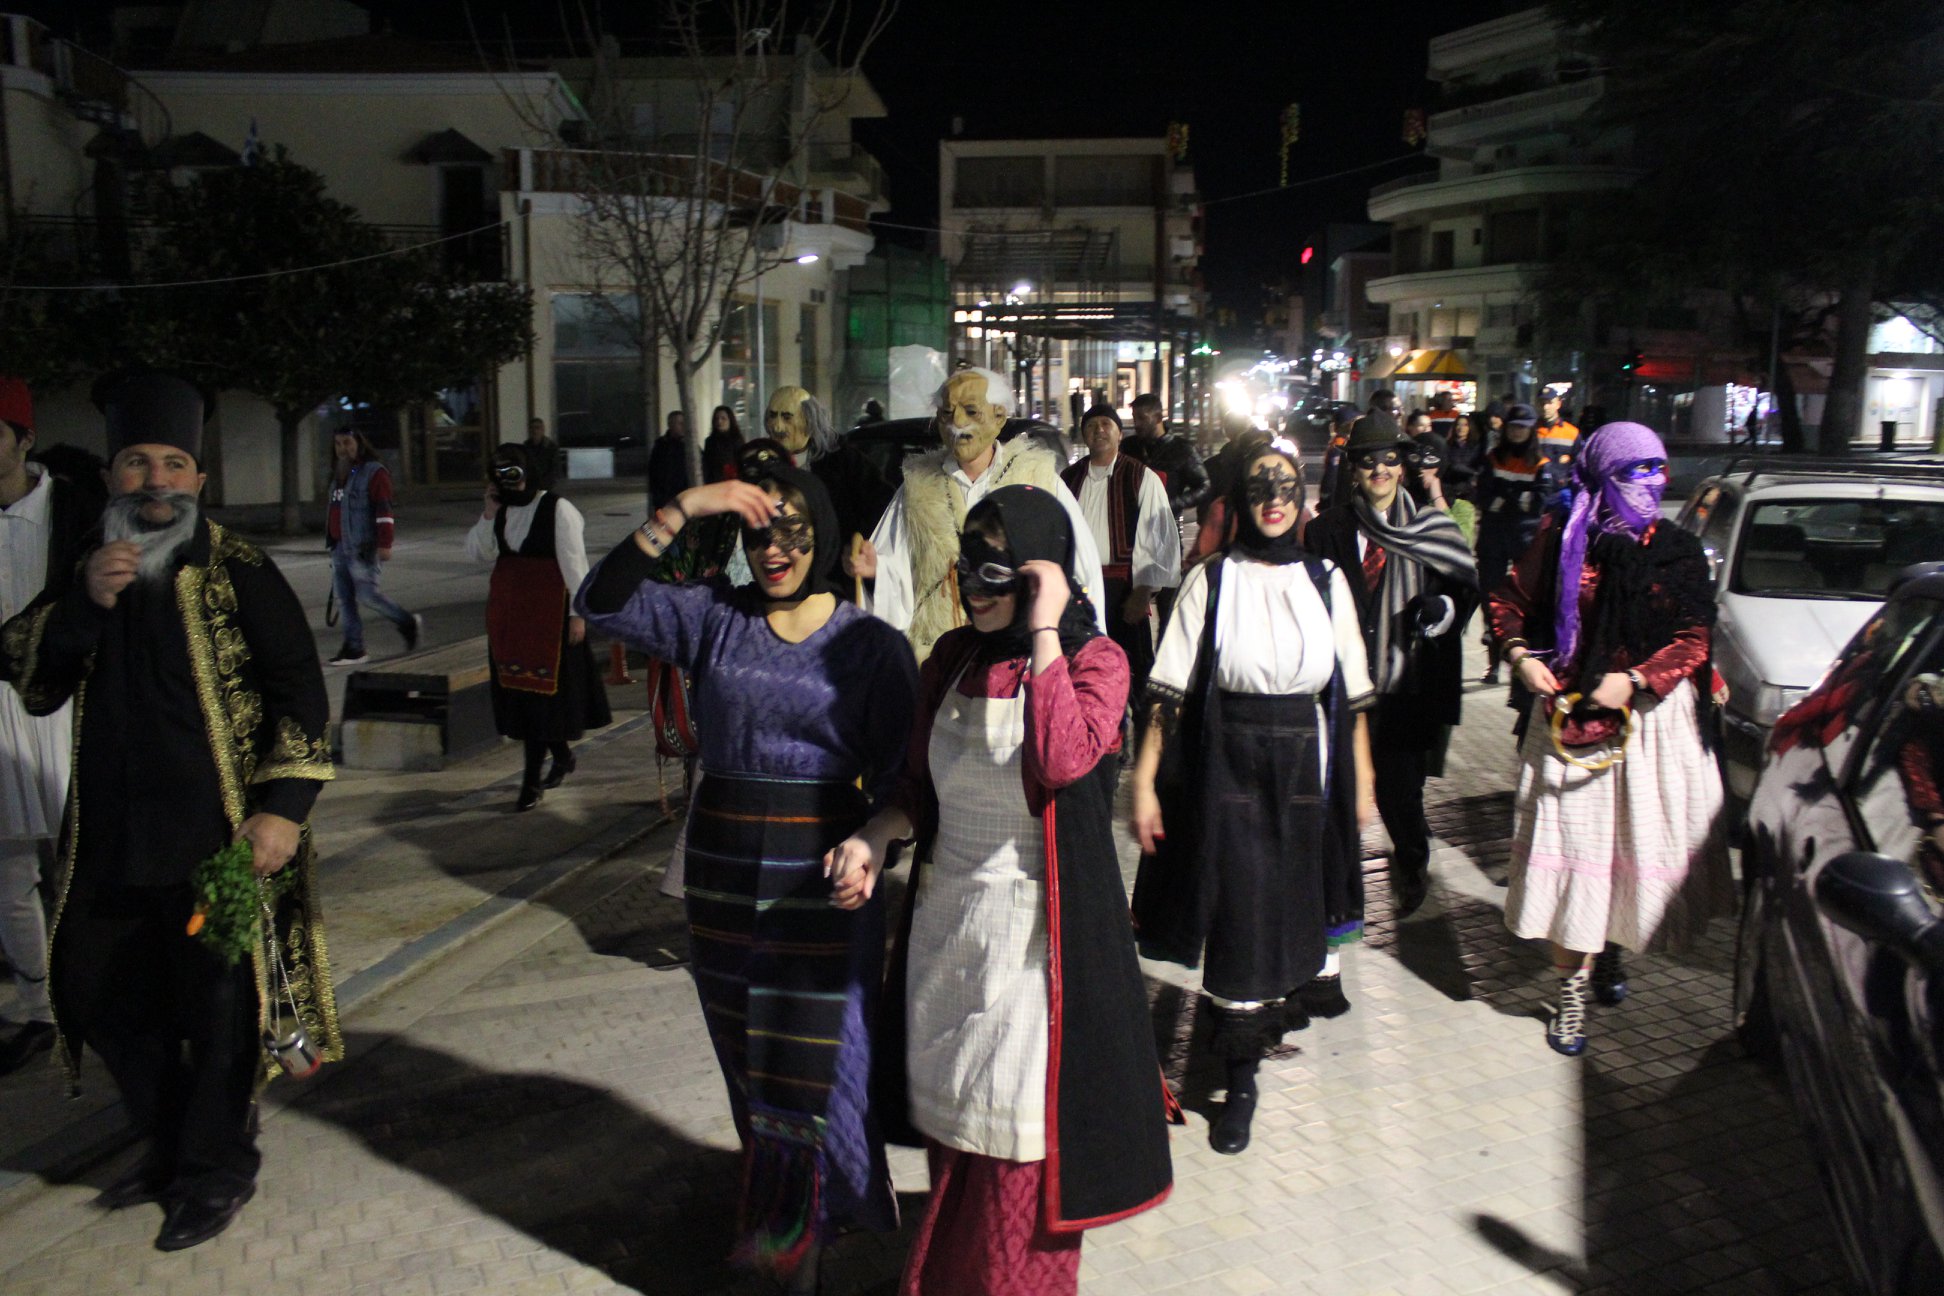 Δήμος Ήλιδας: Εντυπωσιακό ξεκίνημα για το Καρναβάλι της Αμαλιάδας - Ο τελάλης έδωσε το έναυσμα για να βγουν στους δρόμους και να διασκεδάσουν οι κάτοικοι της πόλης (Photos)